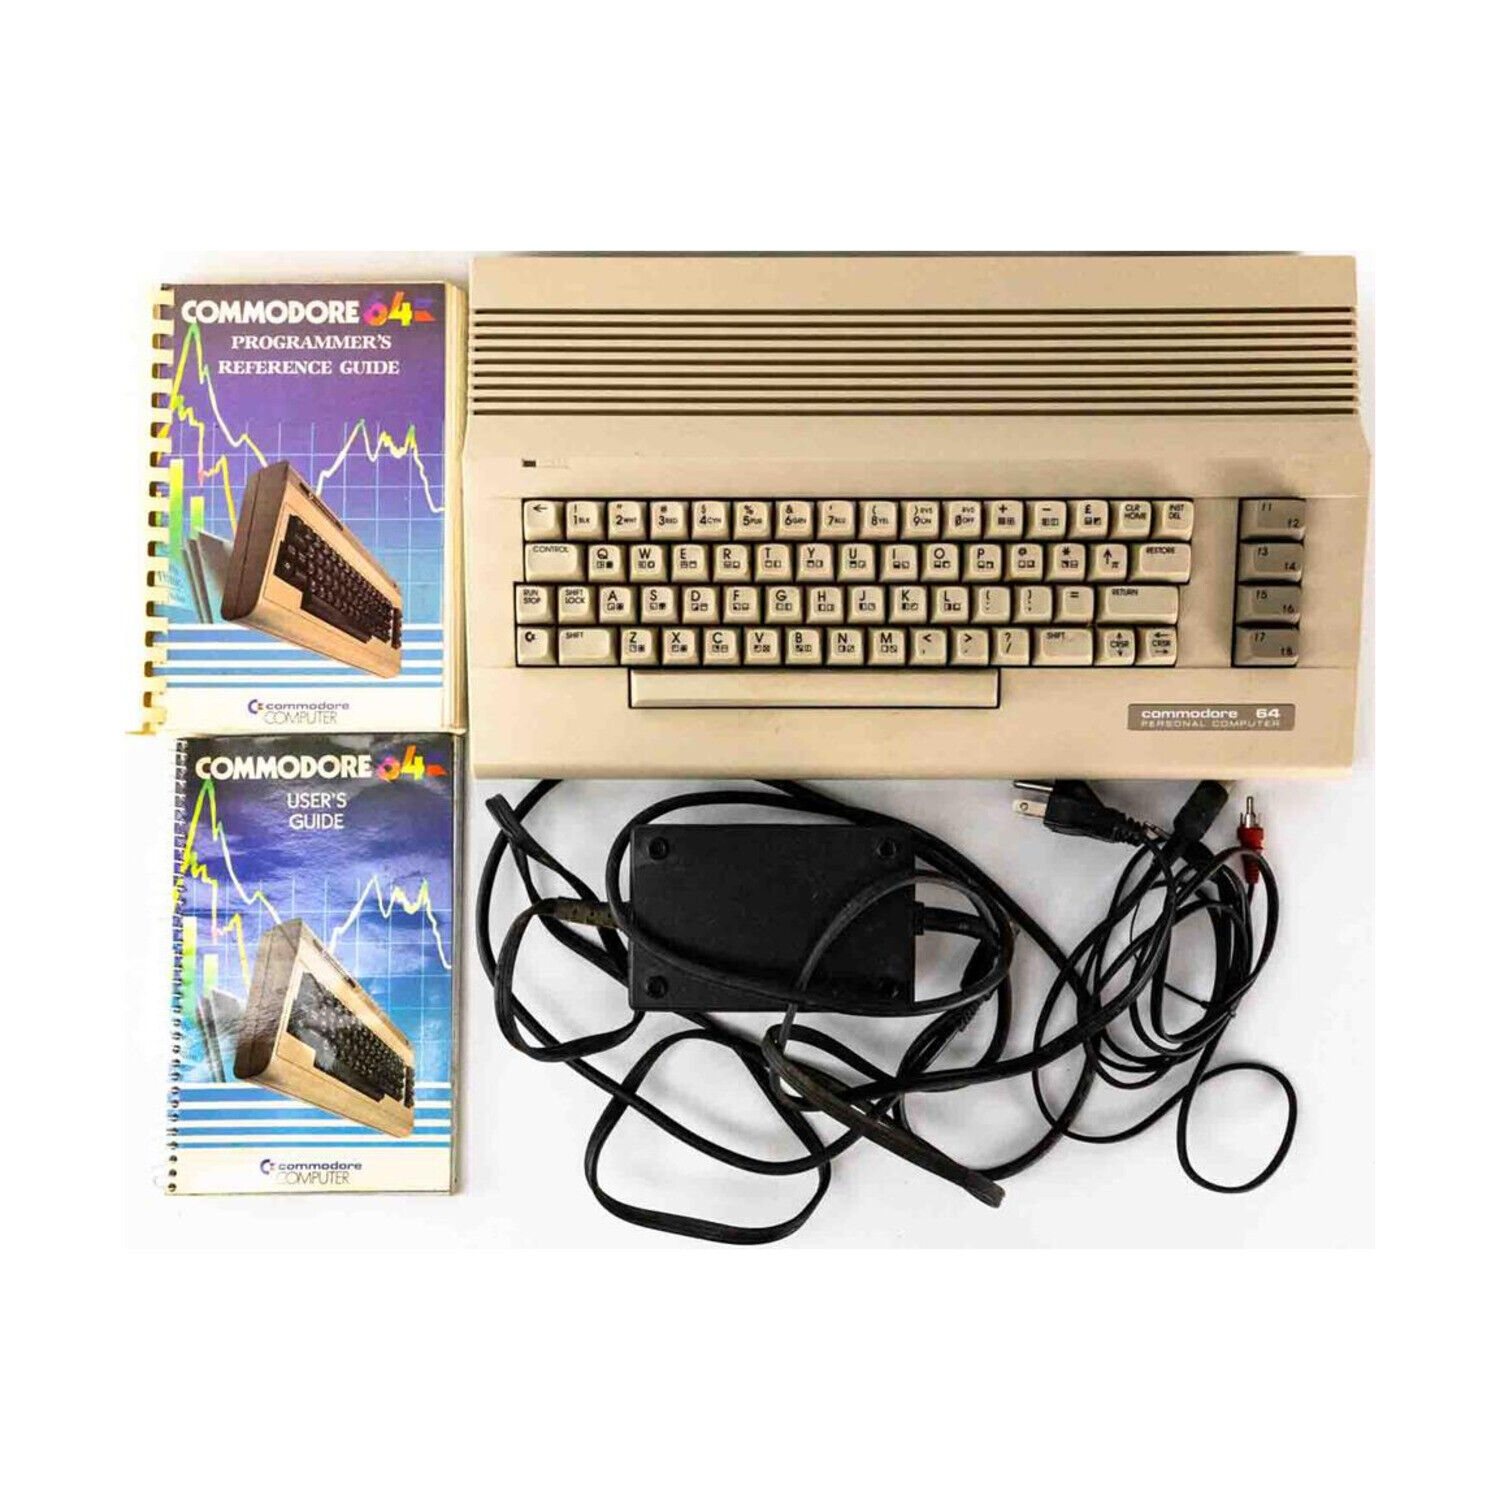 Commodore Computer Accessory Commodore 64 - No Box (White Keyboard) VG+